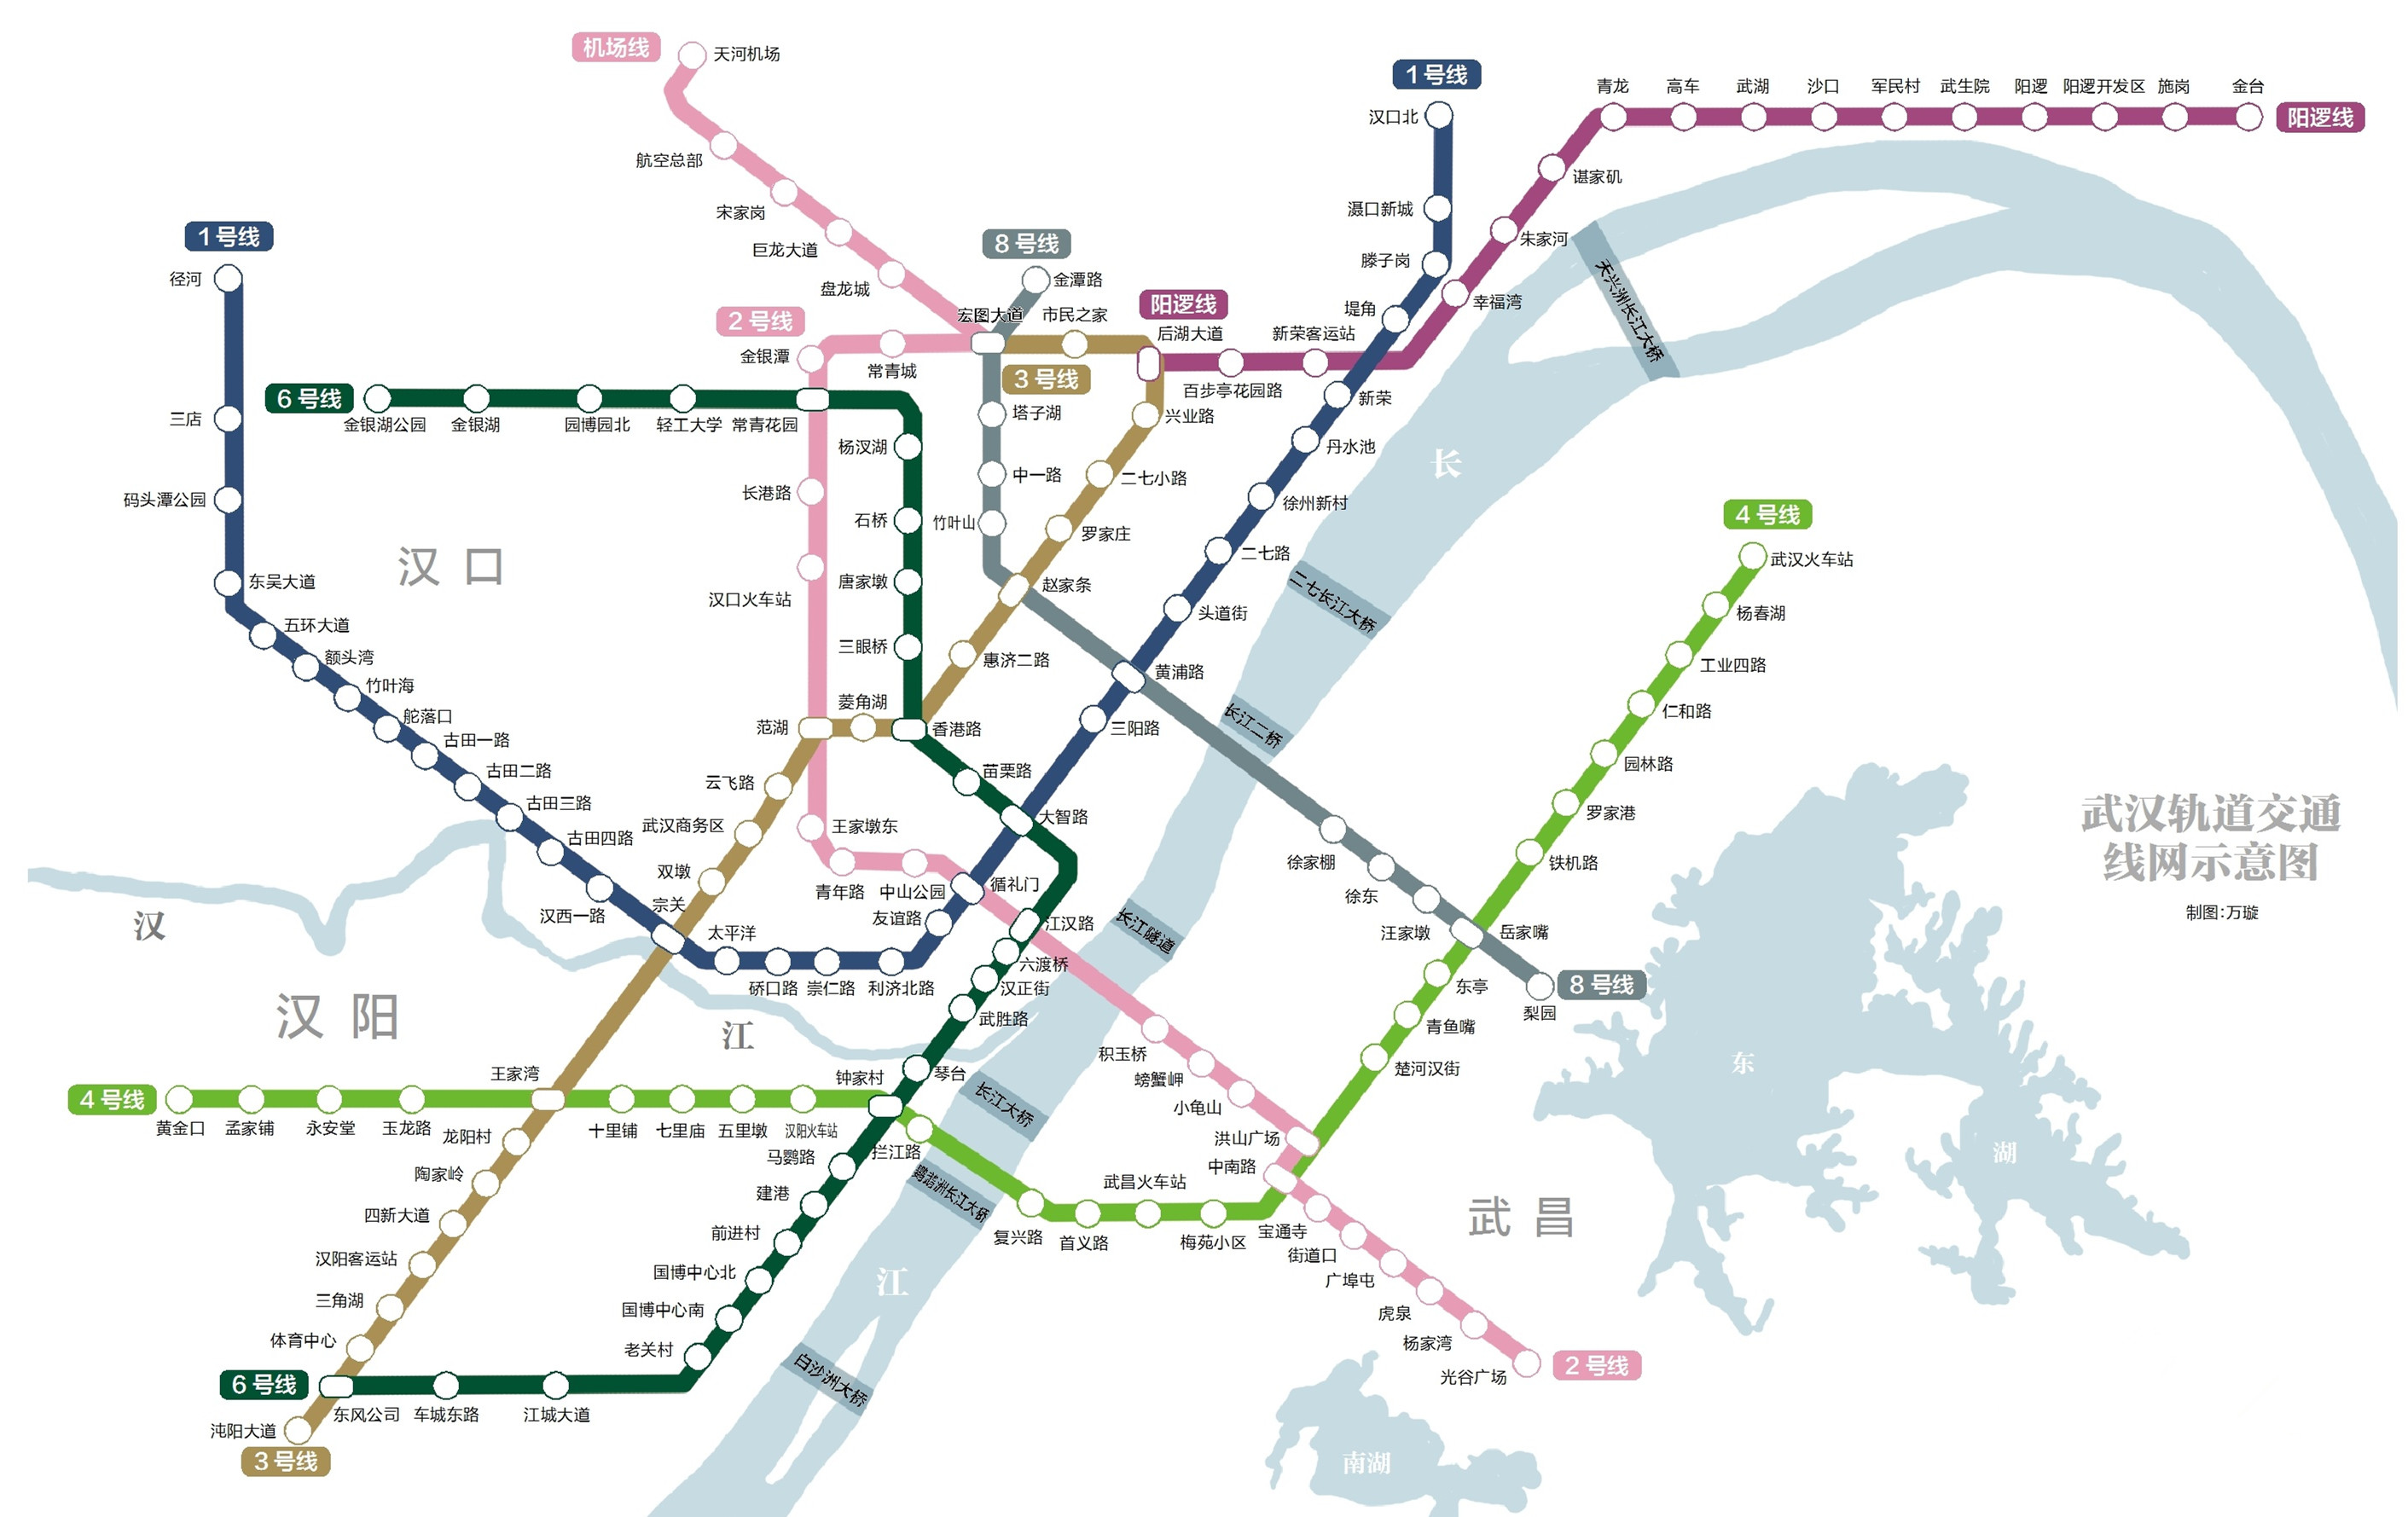 快收藏!武汉地铁最新线路图发布 含附近p r停车场